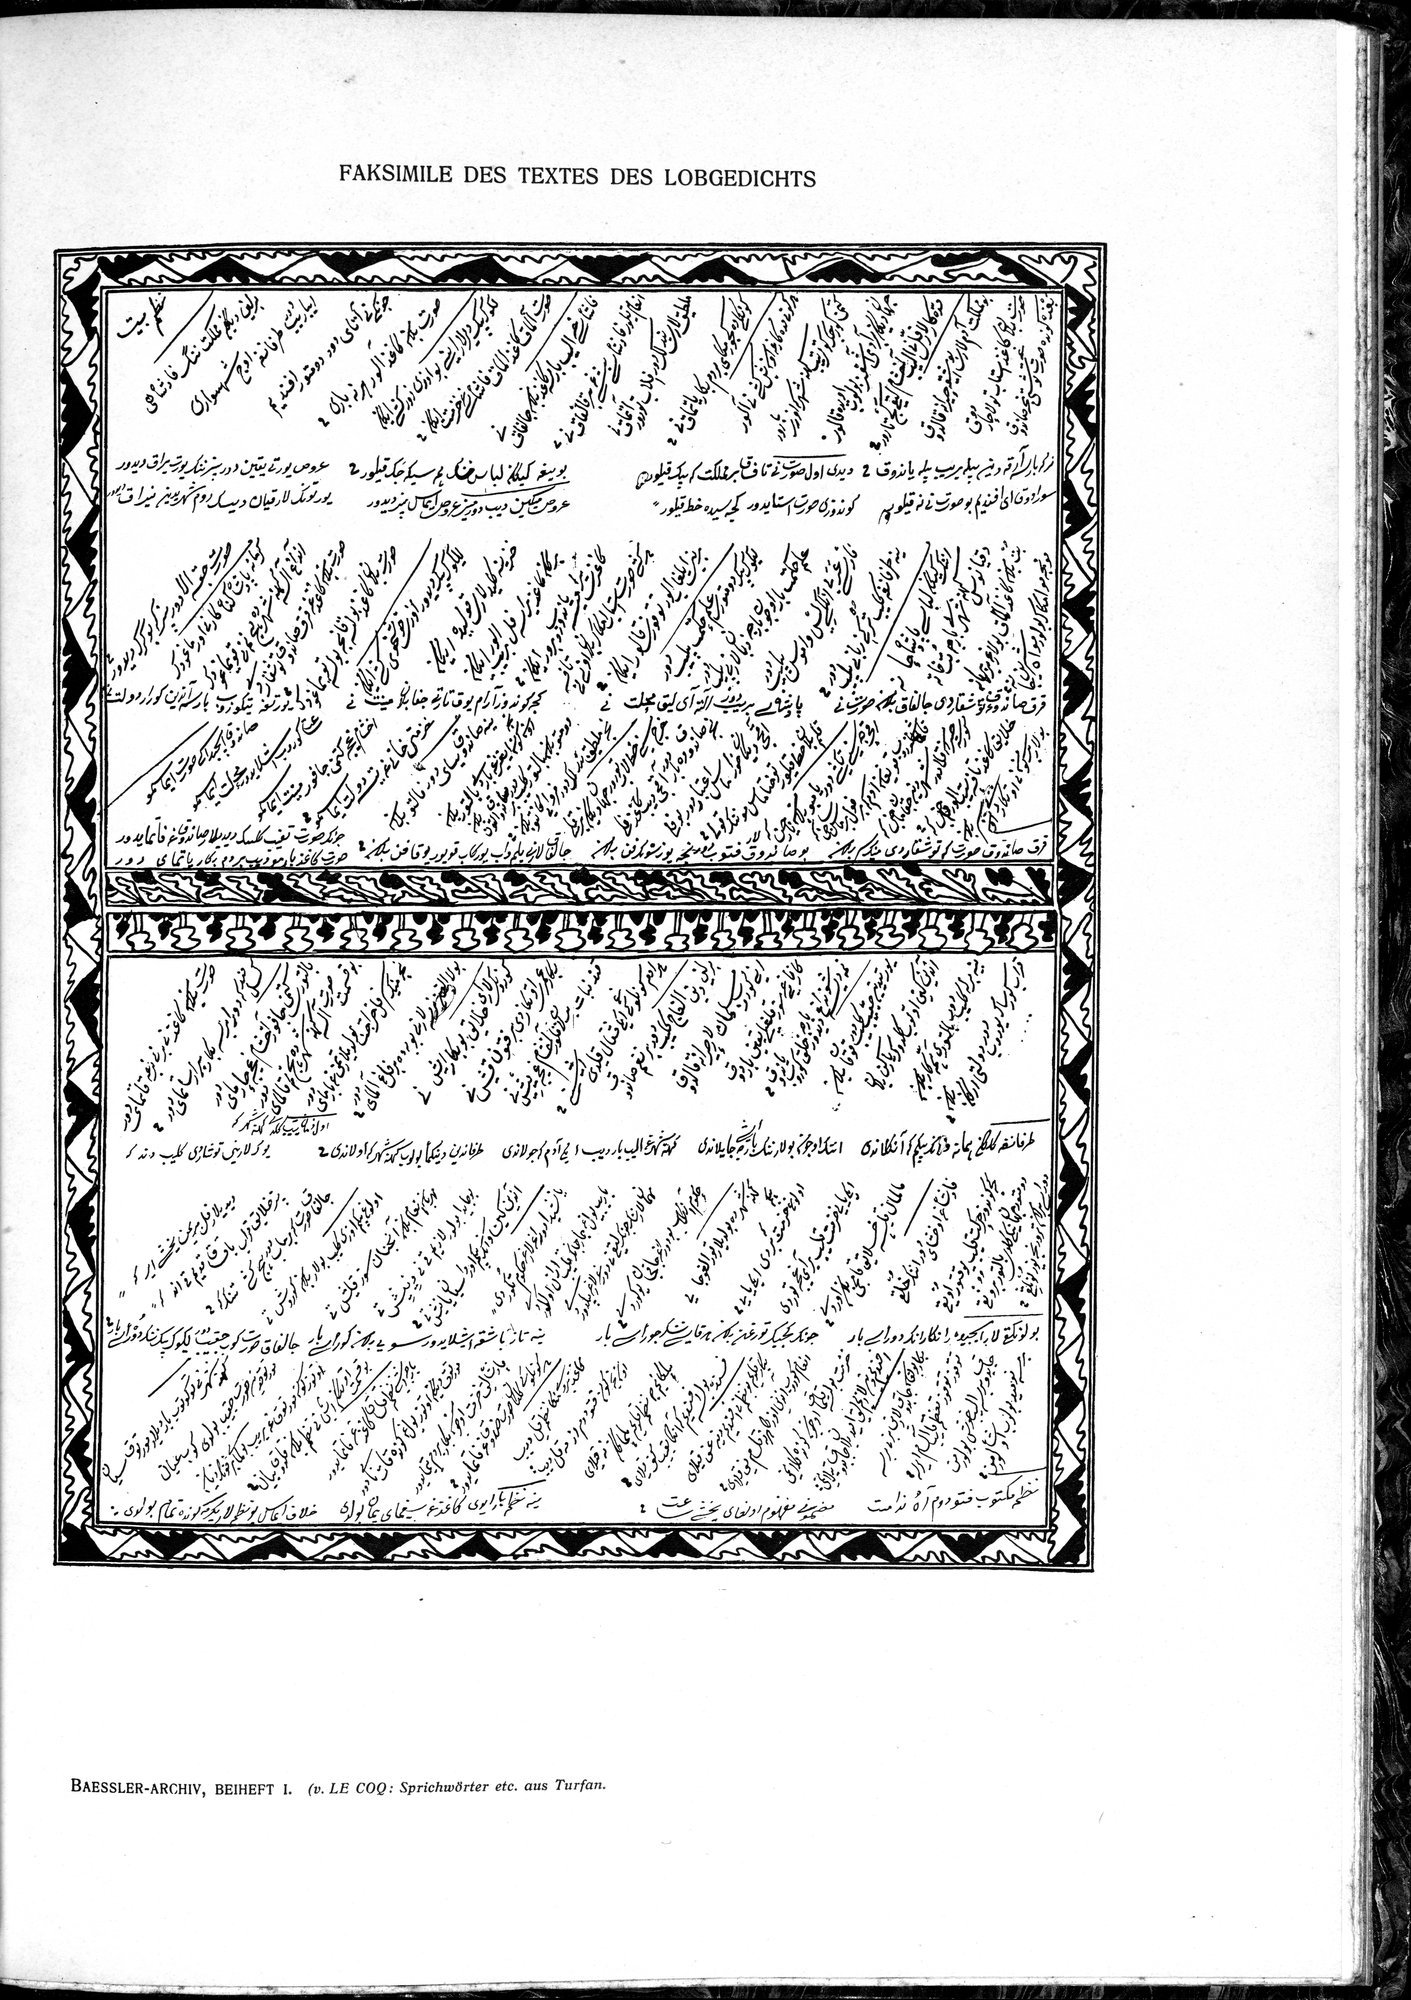 Sprichwörter und Lieder aus der Gegend von Turfan : vol.1 / Page 91 (Grayscale High Resolution Image)